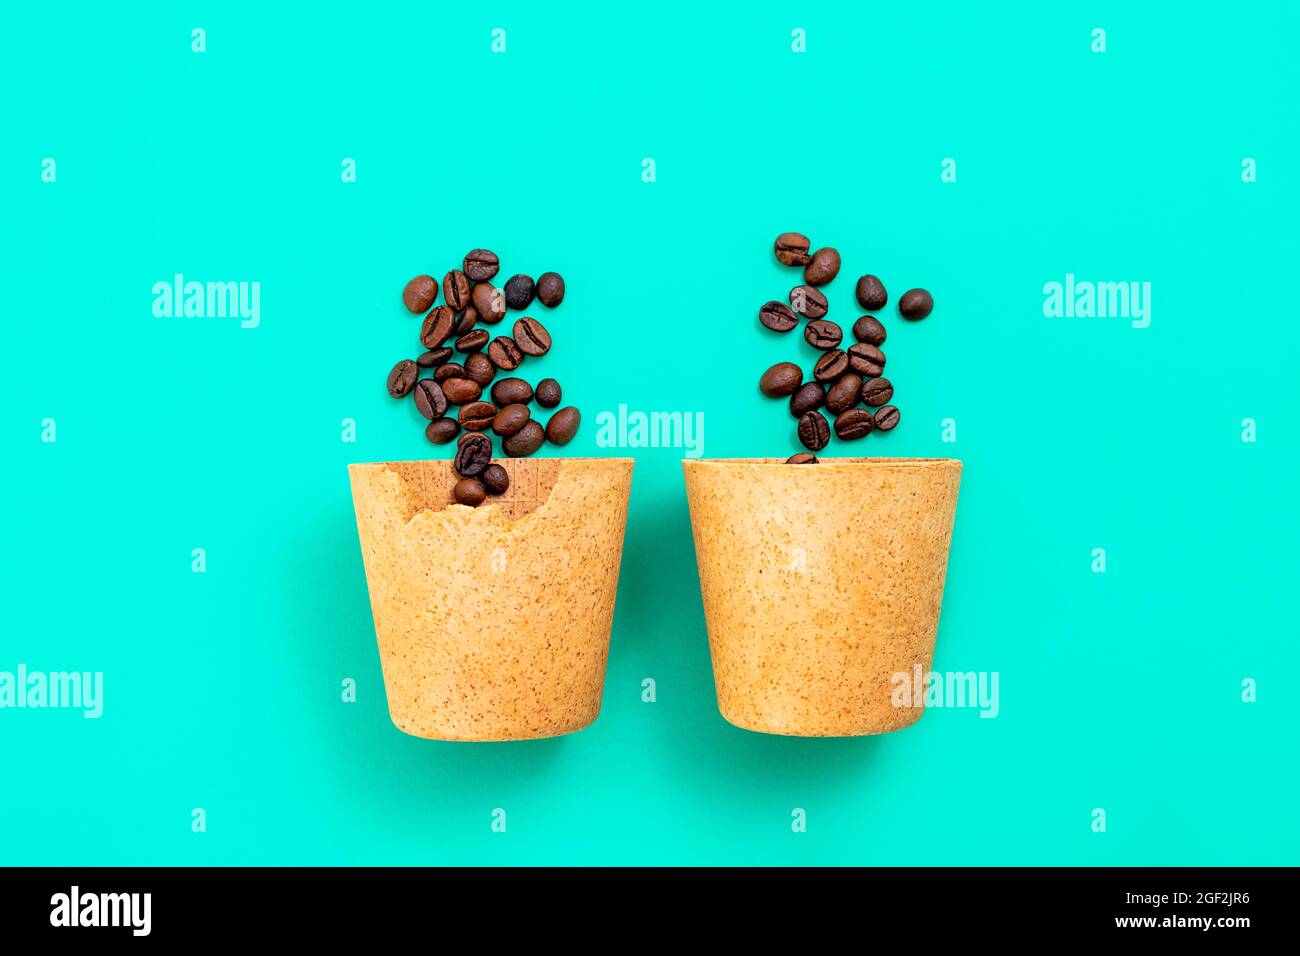 Deux tasses de café écologique comestibles que vous pouvez manger après avoir bu, faites à partir de gaufres, avec des grains de café sur fond vert. Concept zéro déchet, pose à plat Banque D'Images